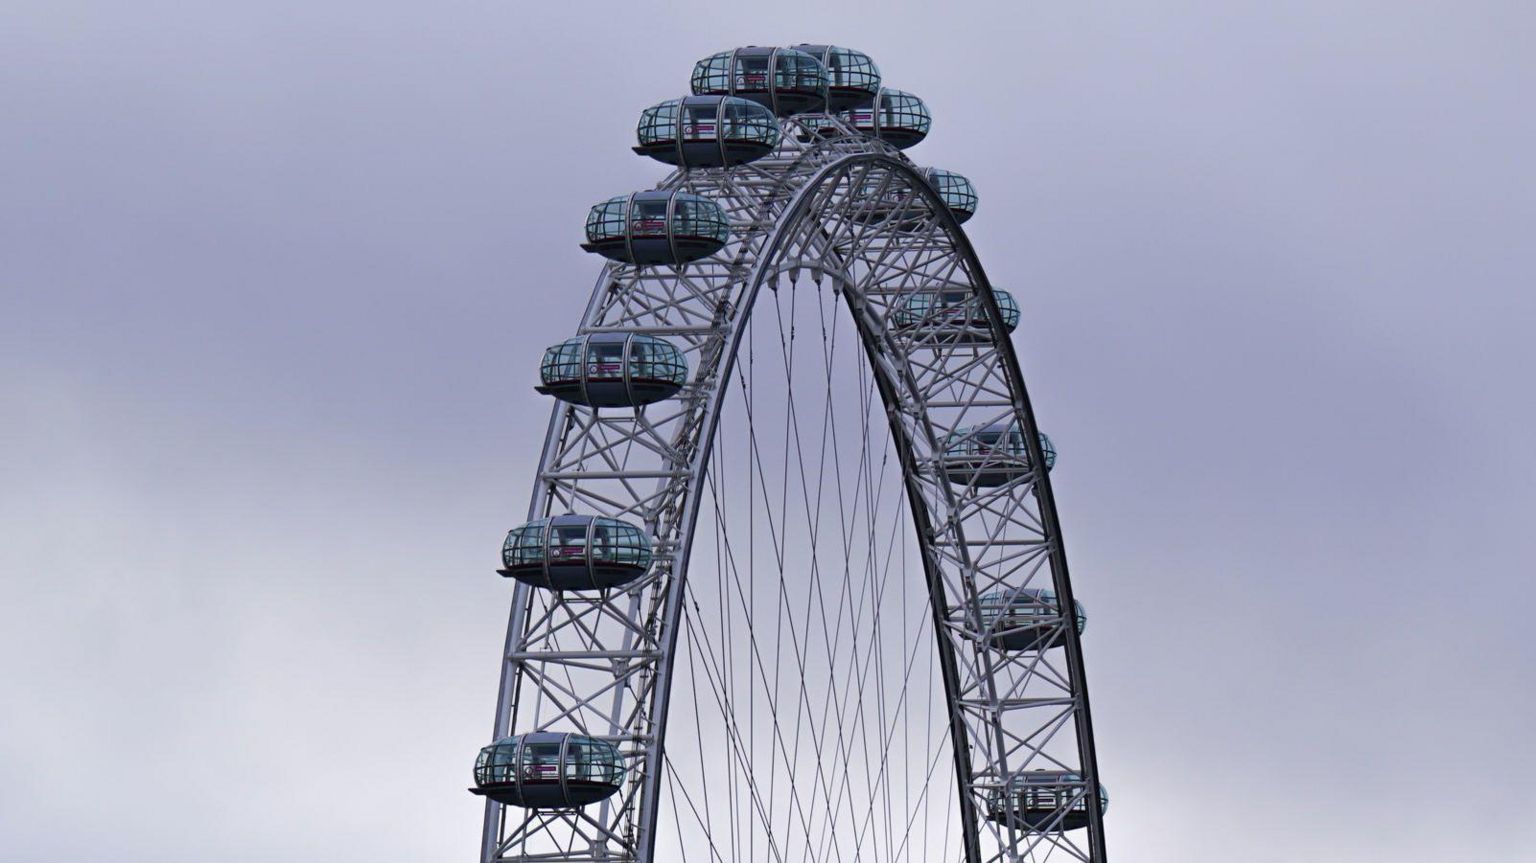 London Eye set against grey skies